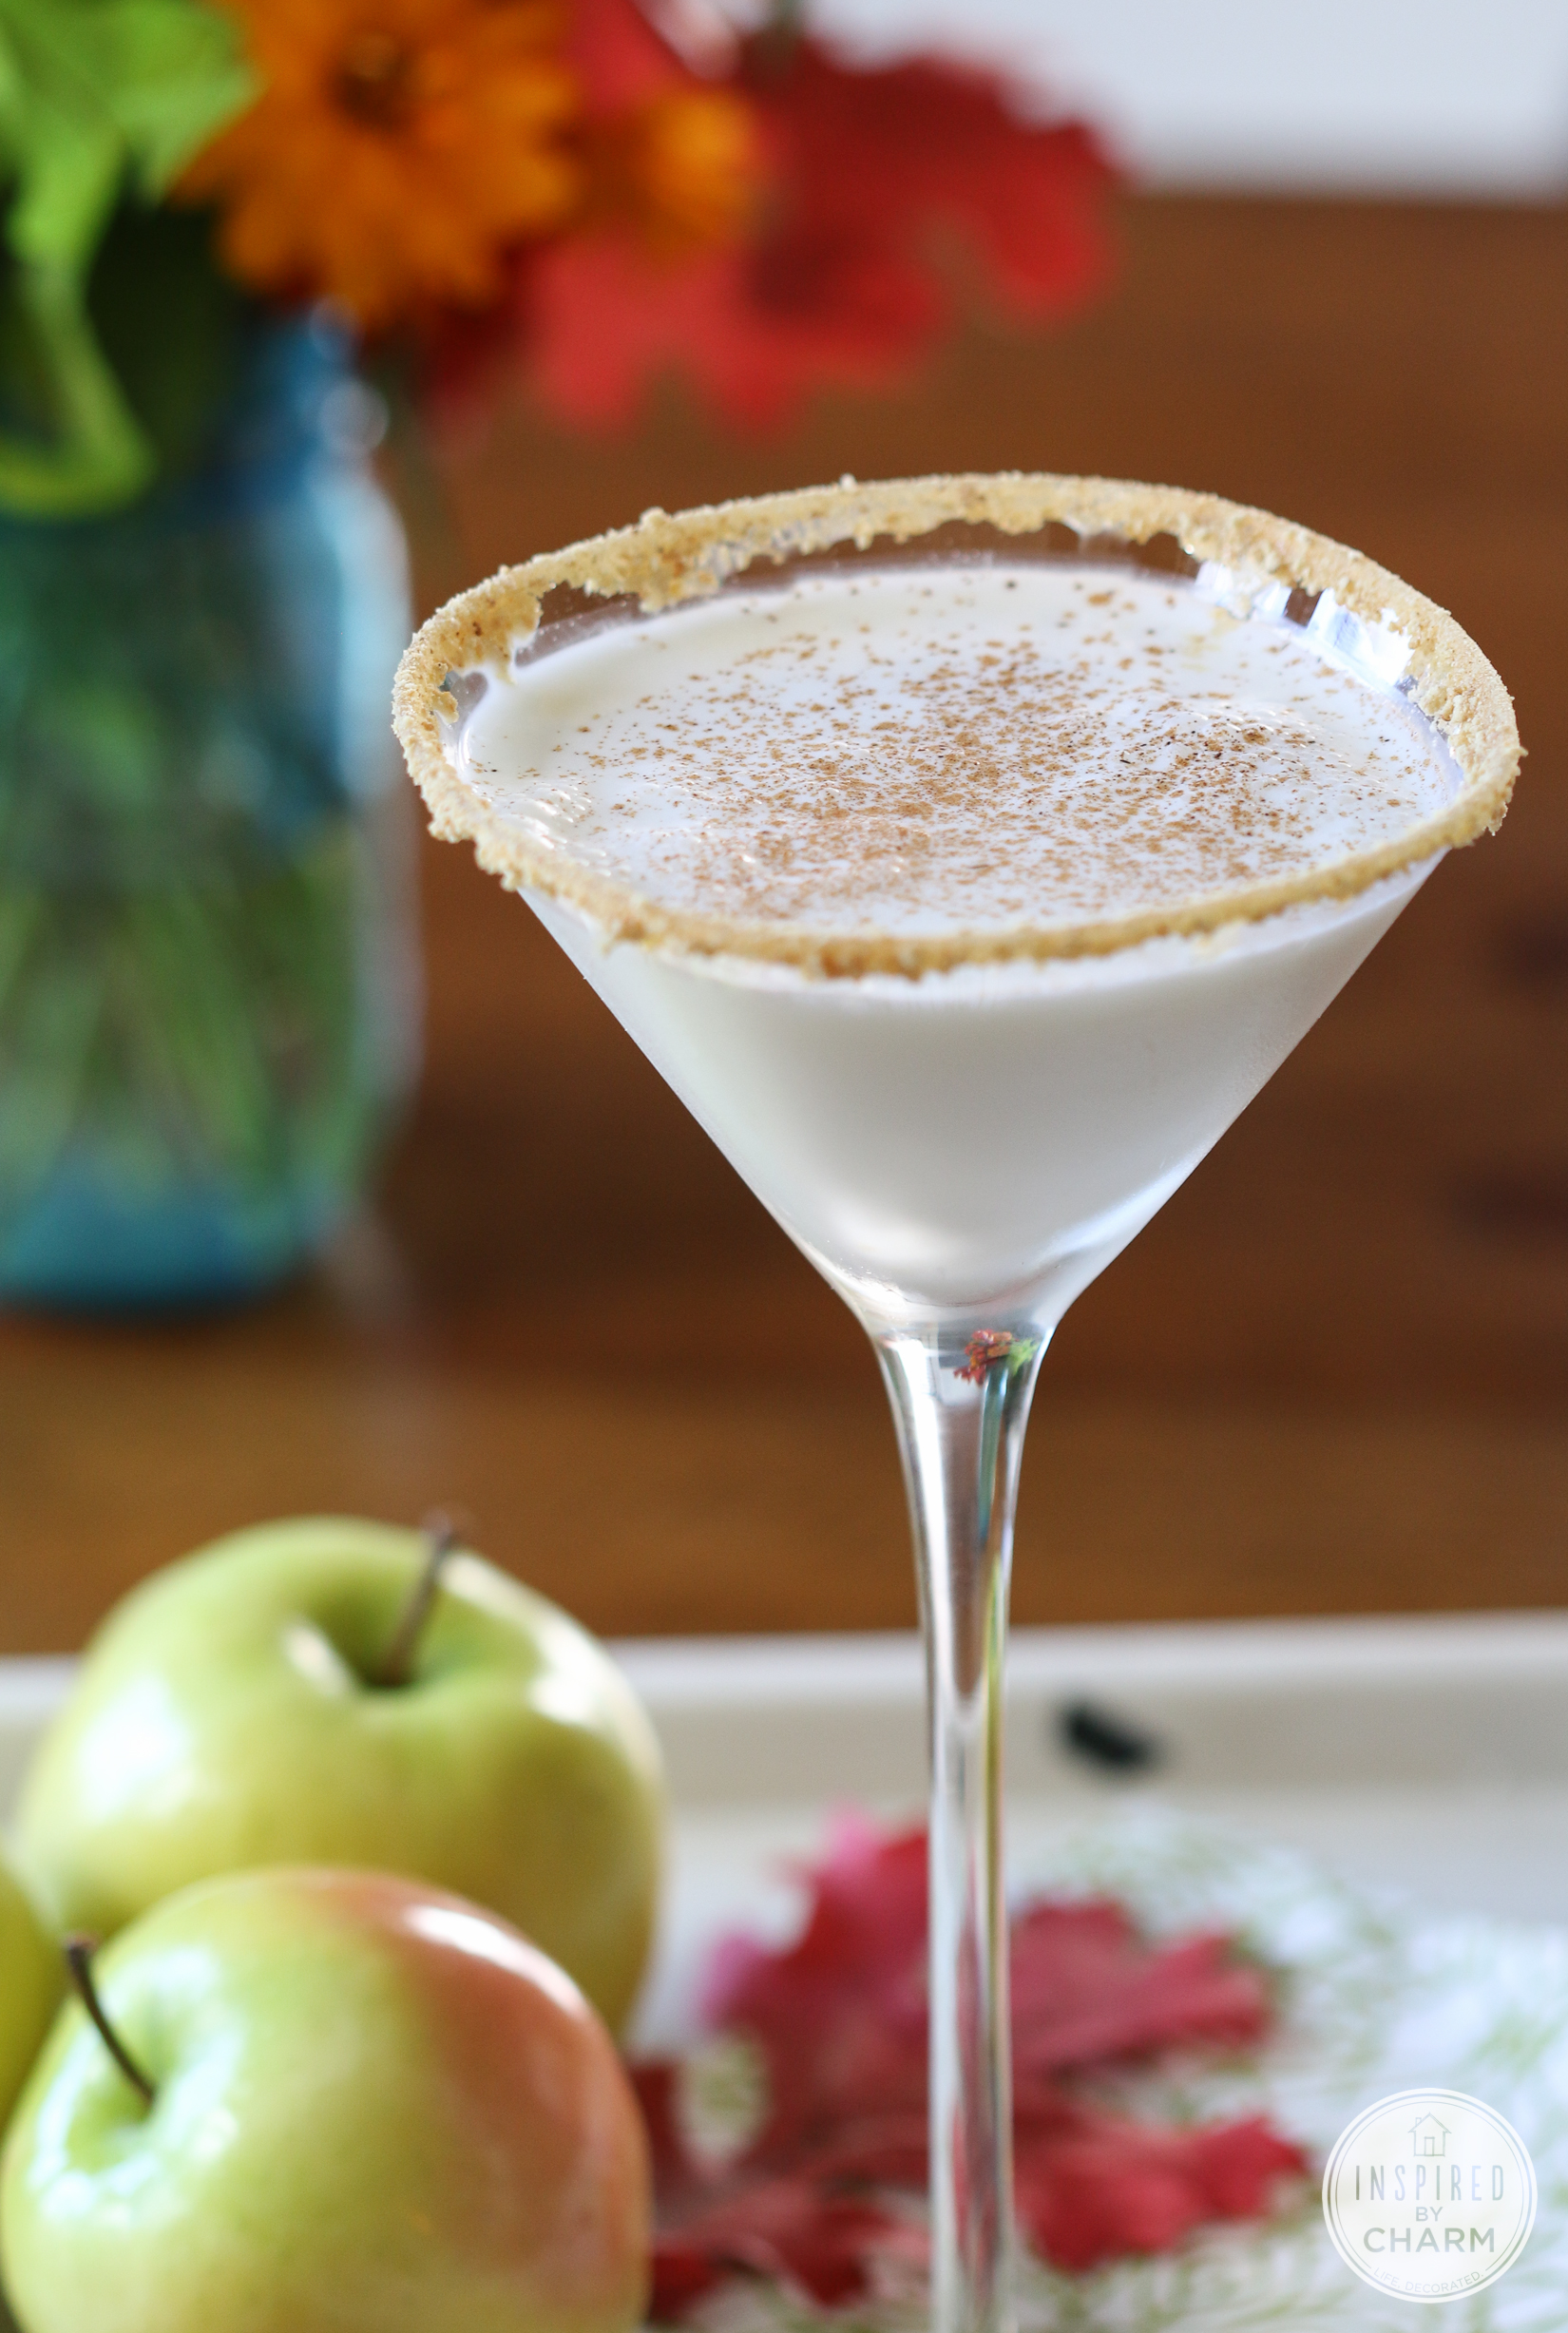 caramel apple inspired martini with graham cracker rim